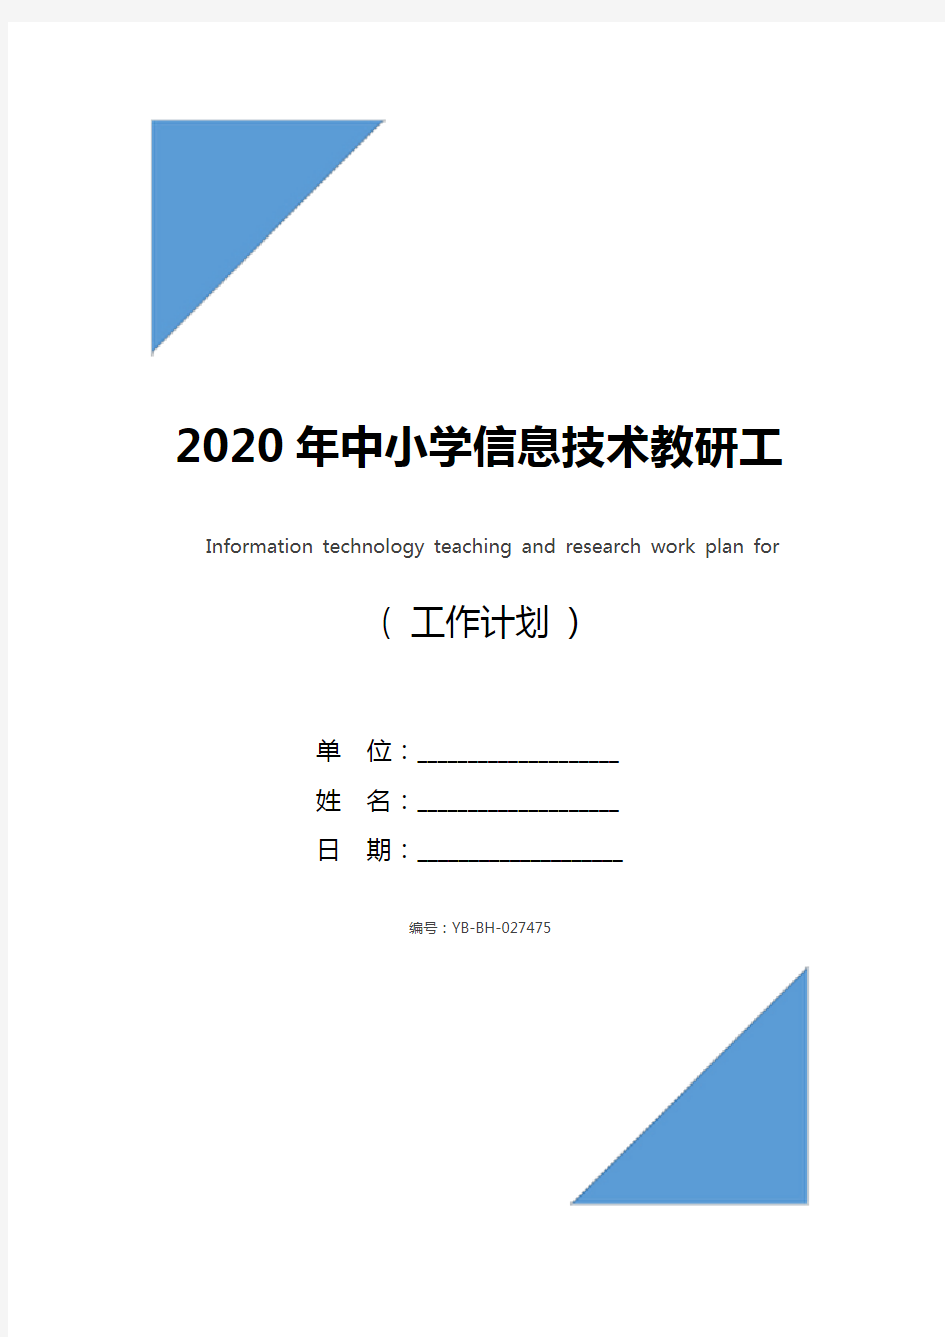 2020年中小学信息技术教研工作计划